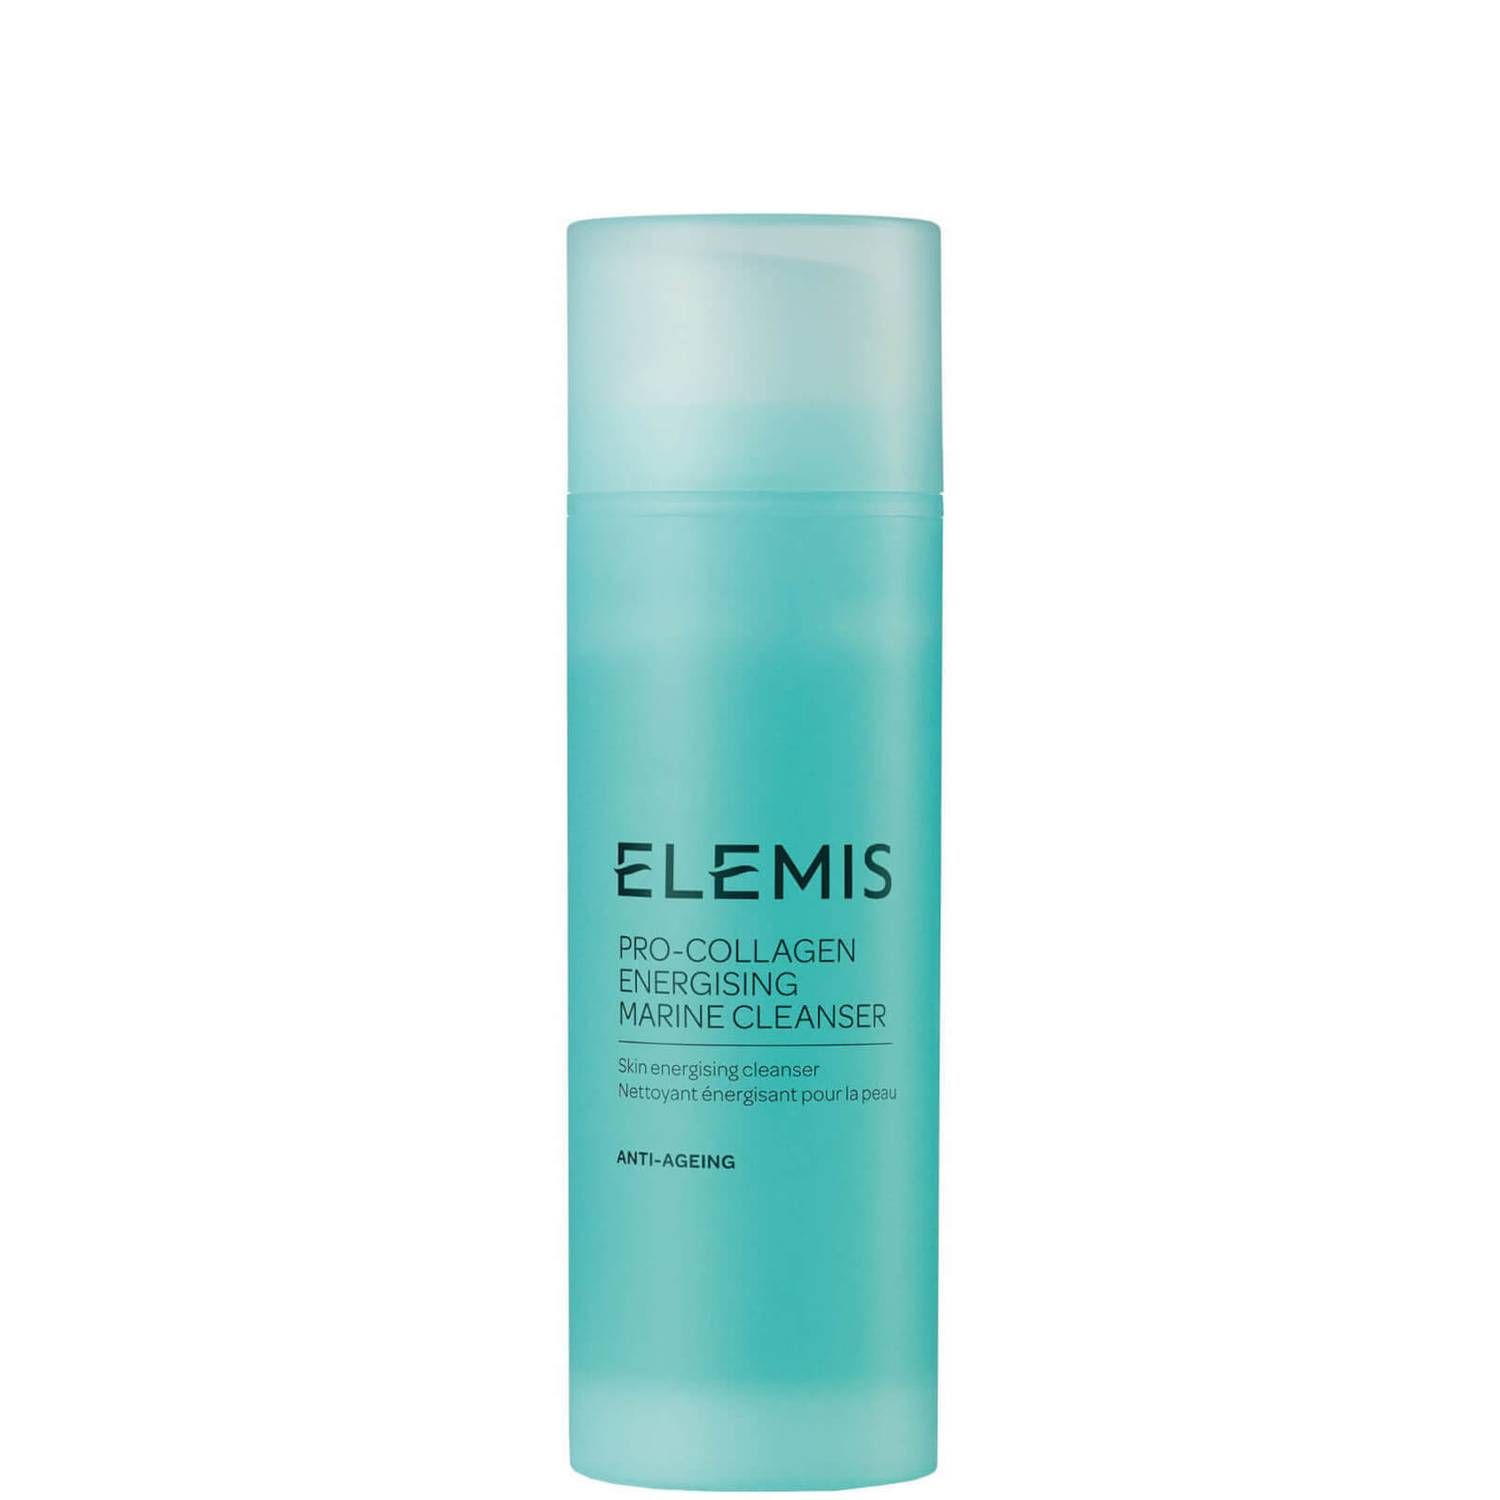 ELEMIS Pro-Collagen Energising Marine Cleanser (150 ml.) | Dermstore (US)